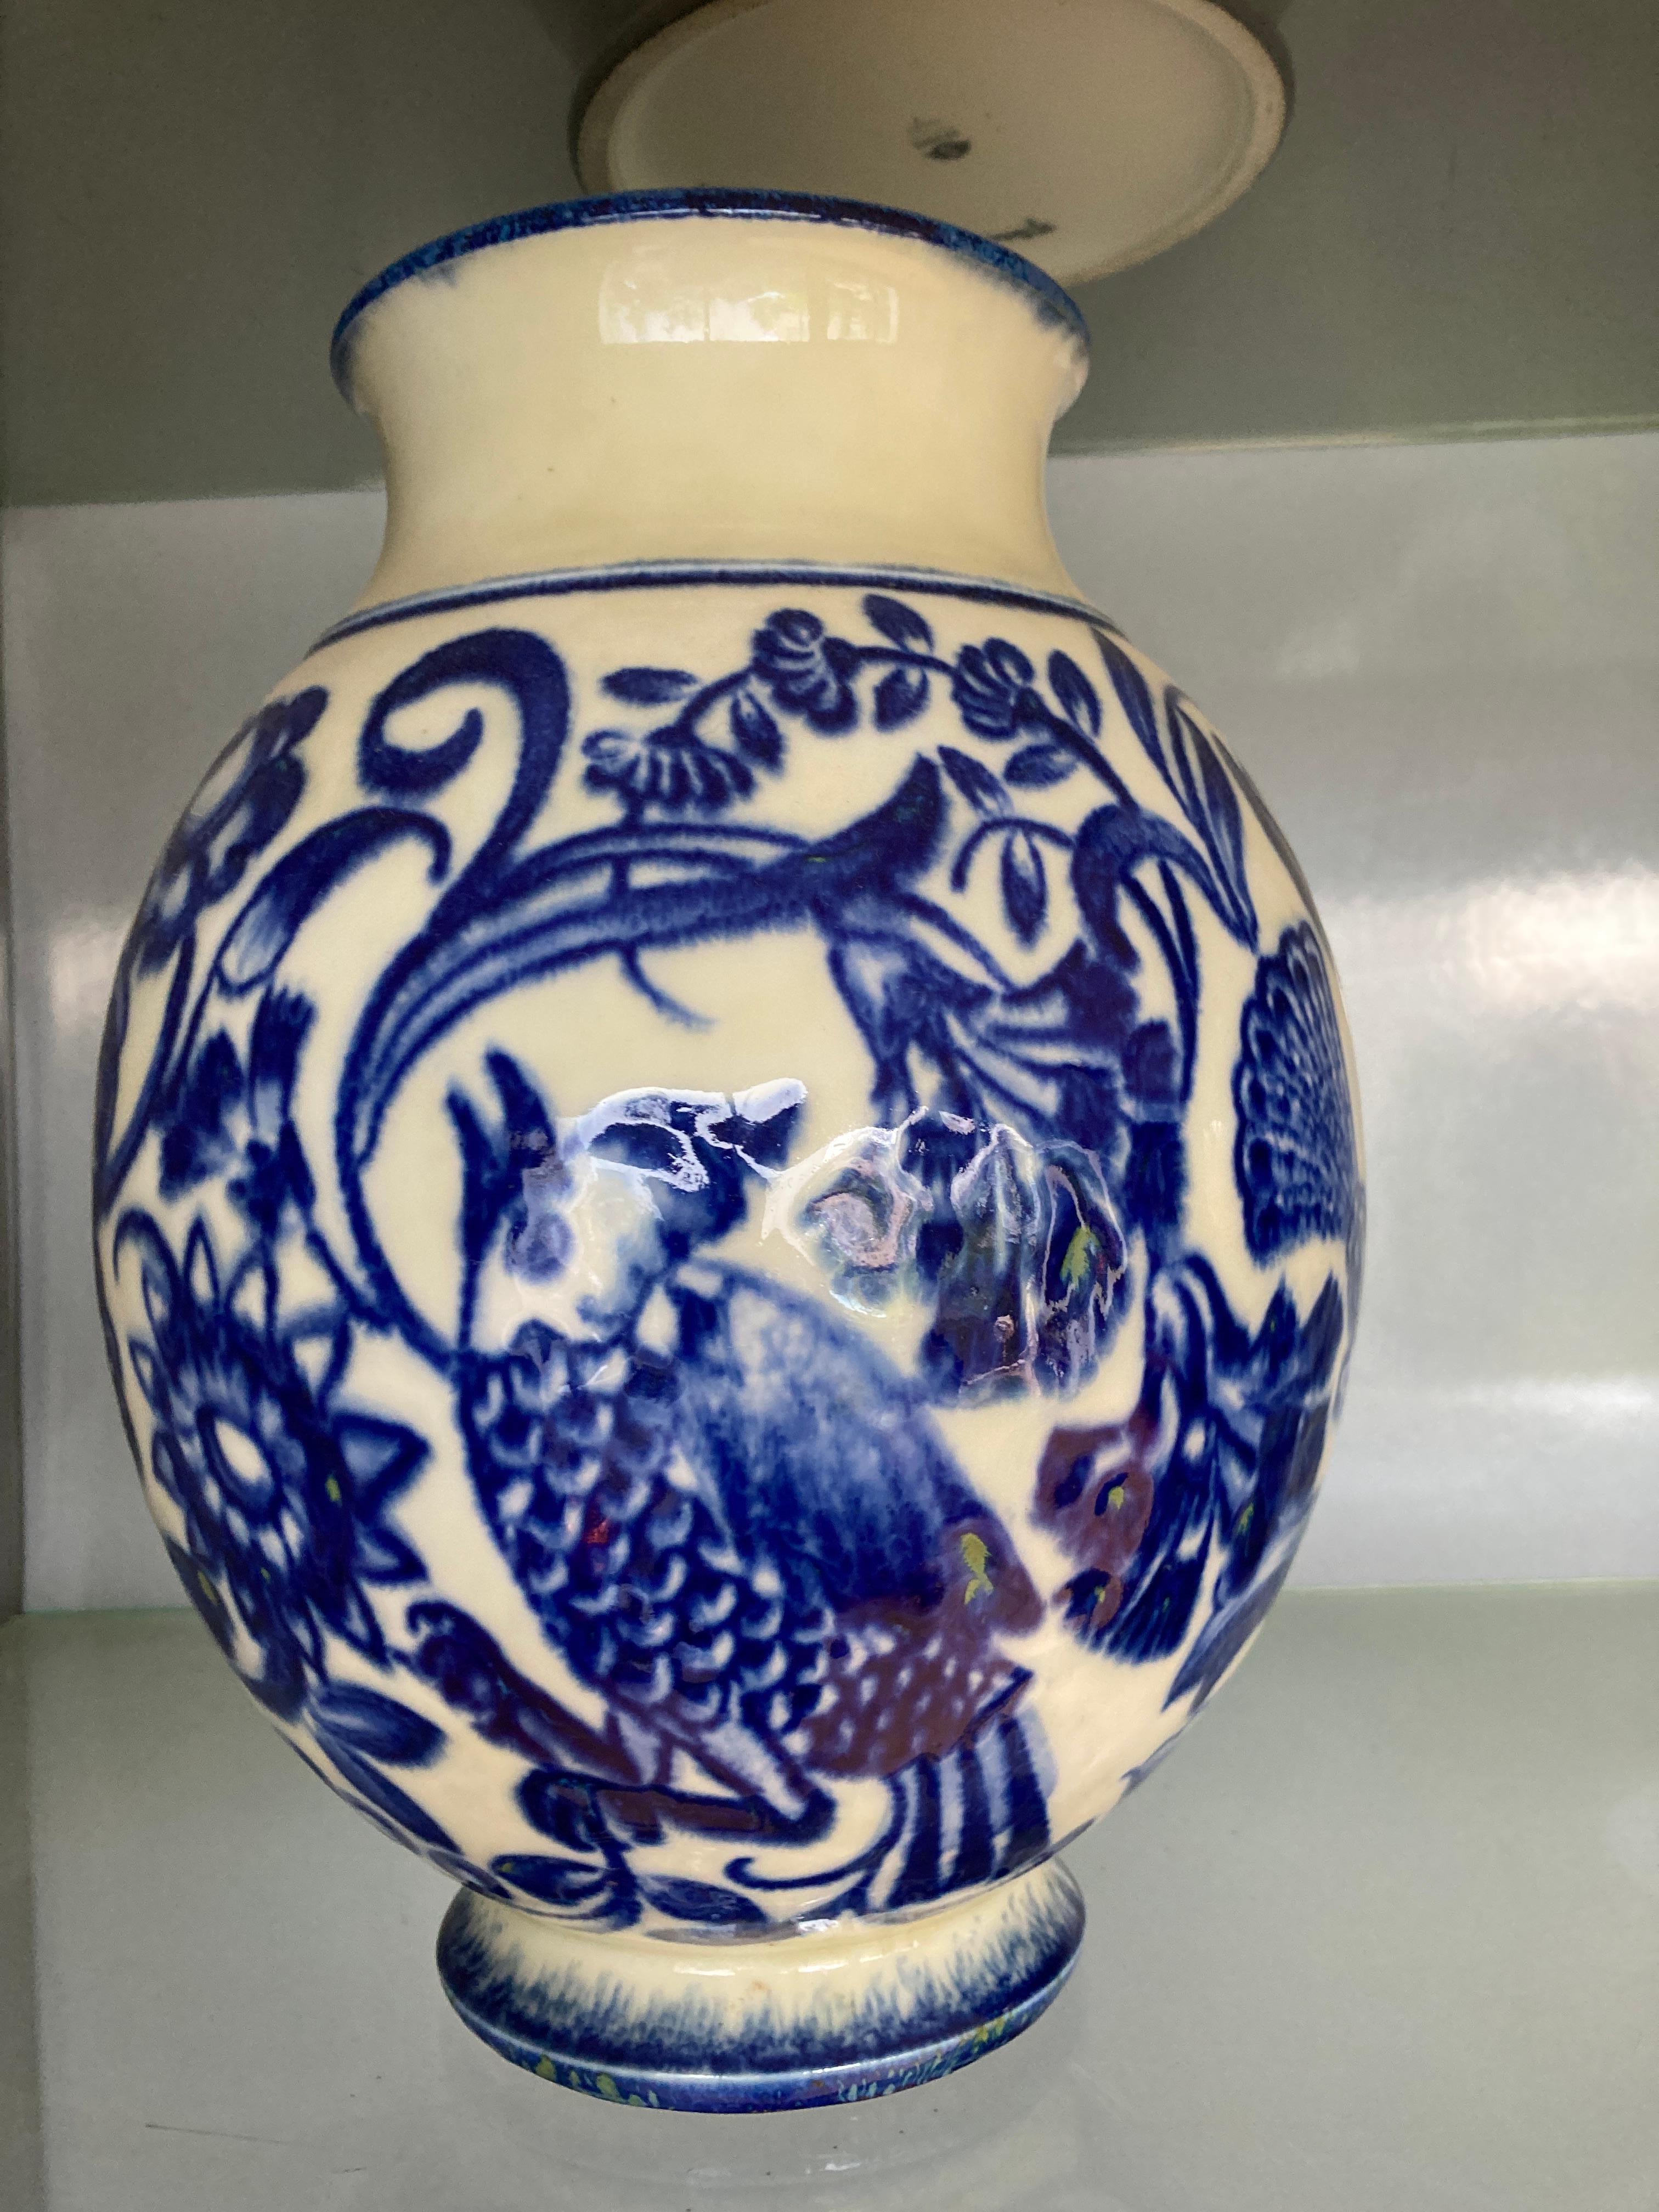 Schöne Porzellanvase mit blauen Vögeln
Entworfen im Jahr 1947
Unterzeichnet mit Briefmarken
Es handelt sich um ein seltenes Stück aus der renommiertesten Porzellanmanufaktur der Welt.
